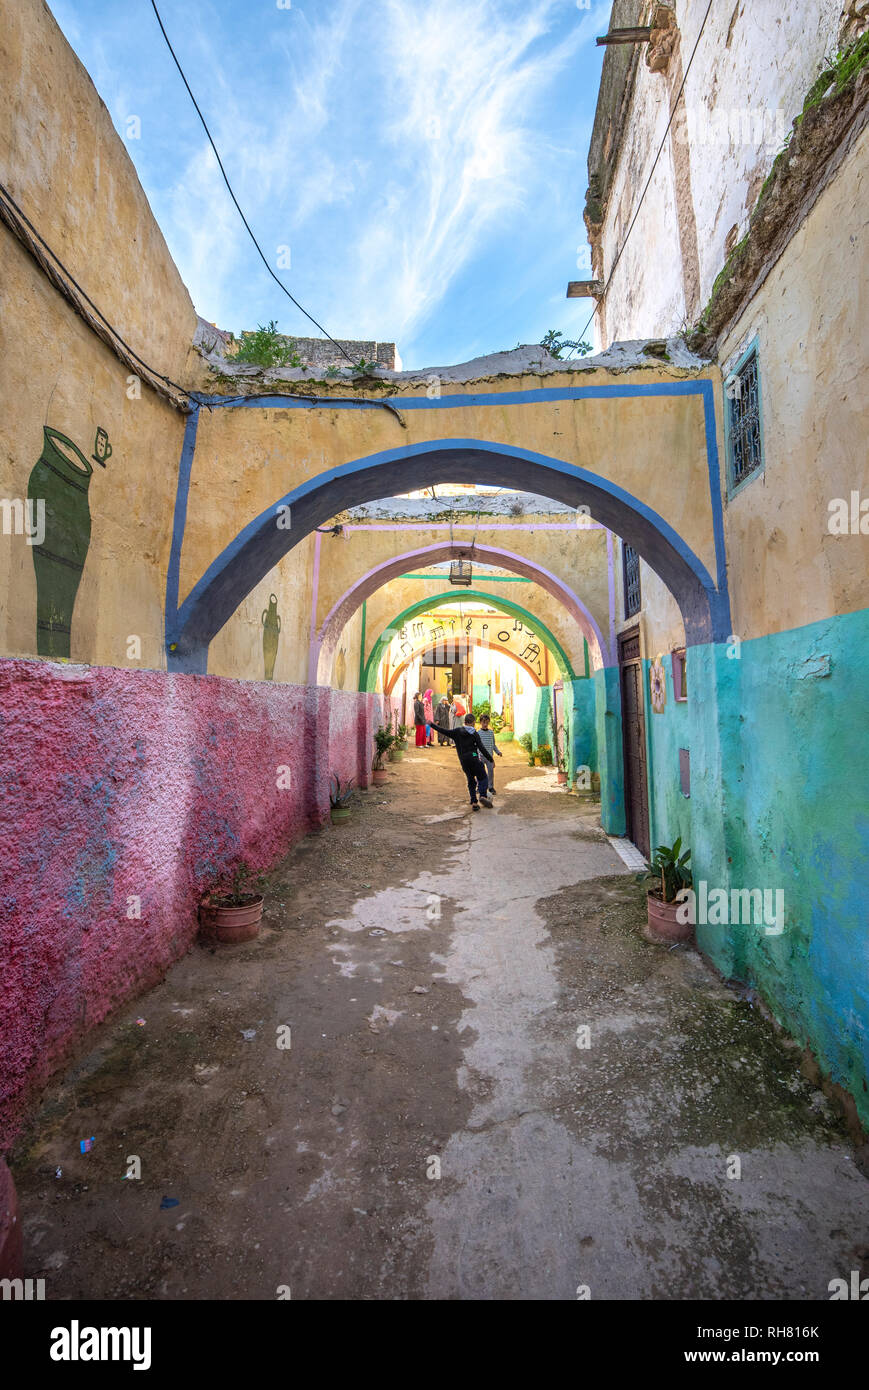 Peint en couleur dans la rue de l'ancienne médina de Meknès. La ville ancienne et la plus ancienne capitale et l'une des quatre villes impériales du Maroc. Banque D'Images